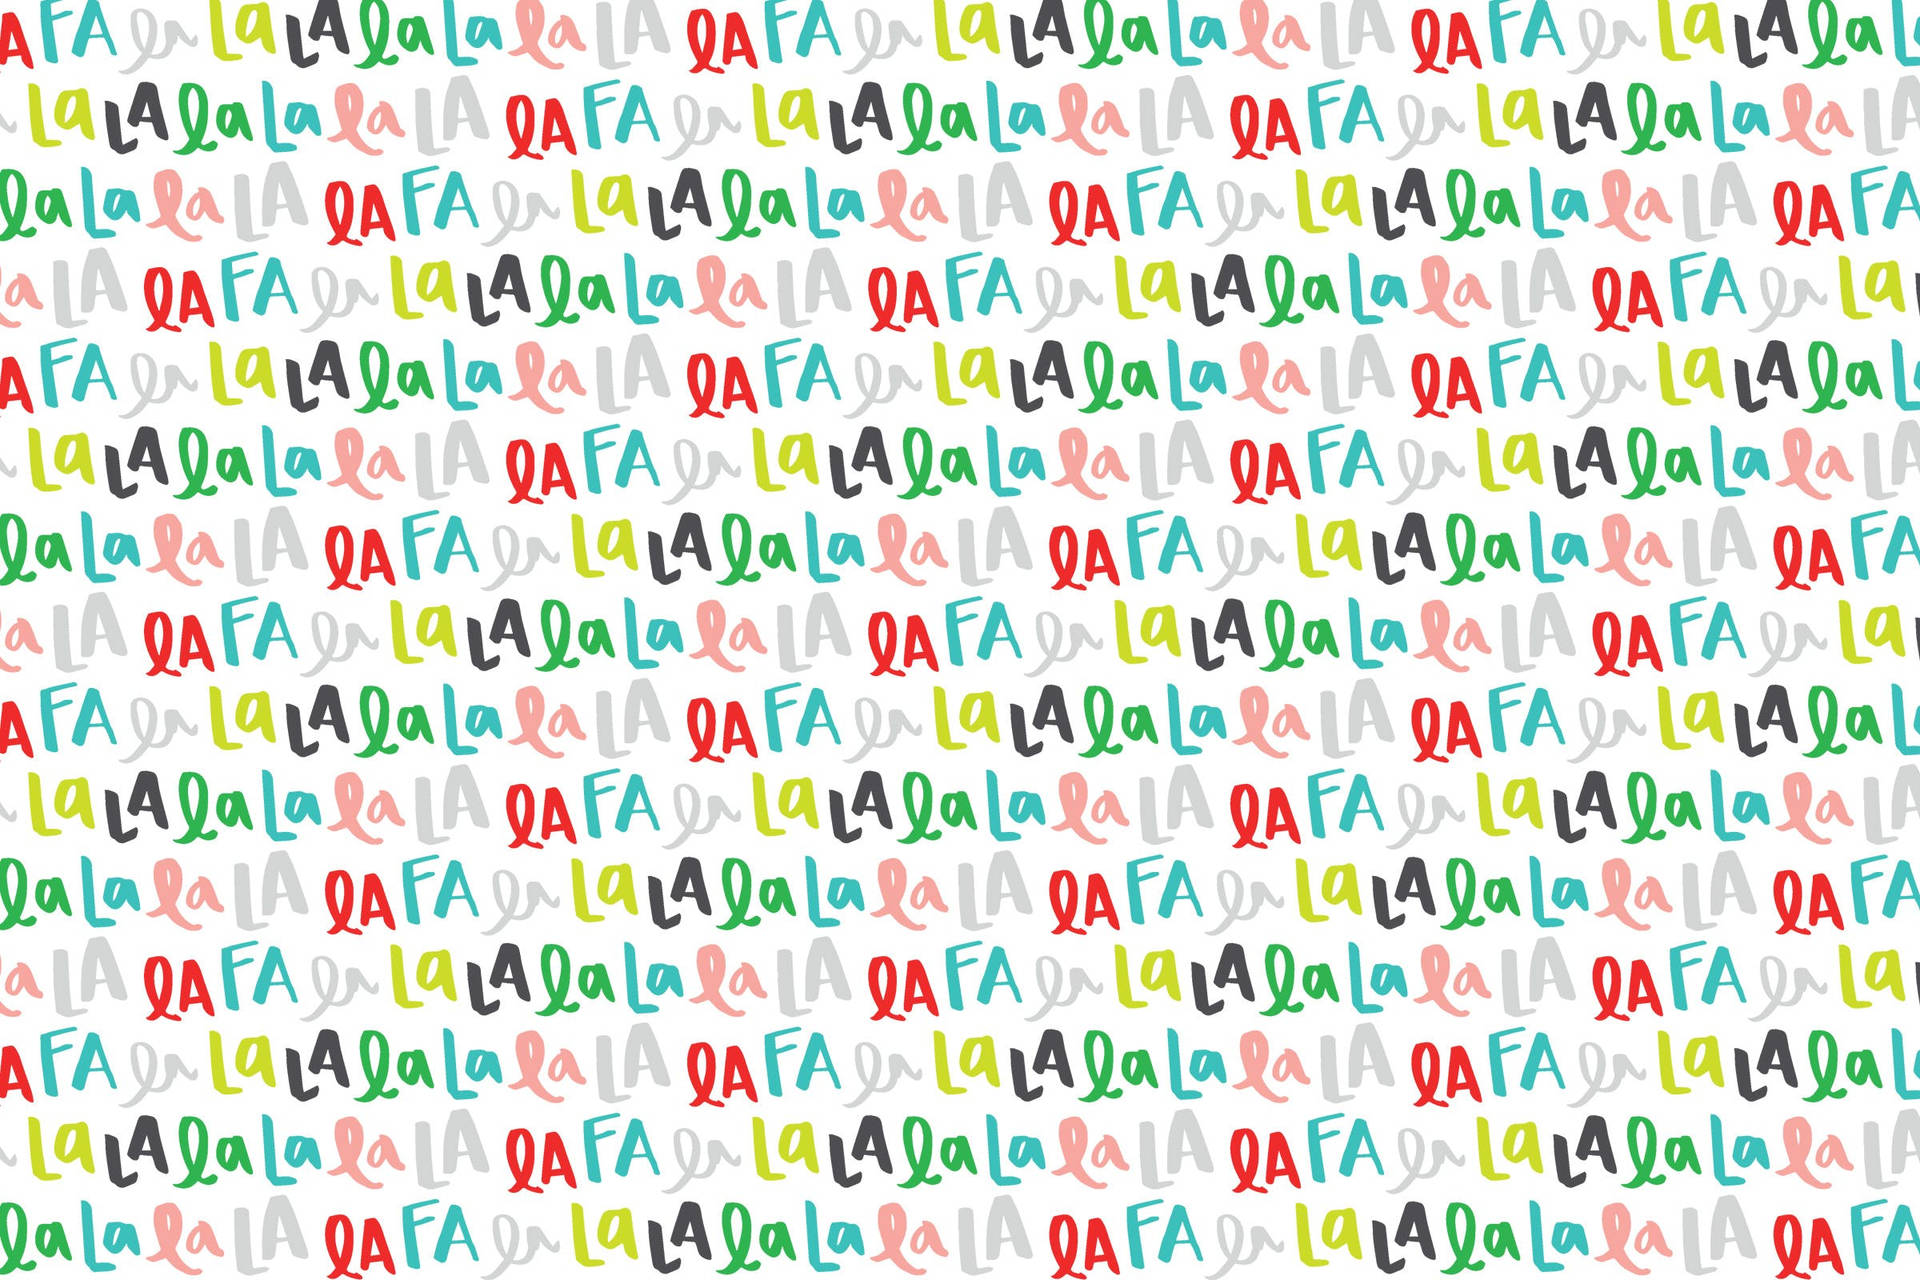 Festive Fa La La La La Lyrics Typography Wallpaper